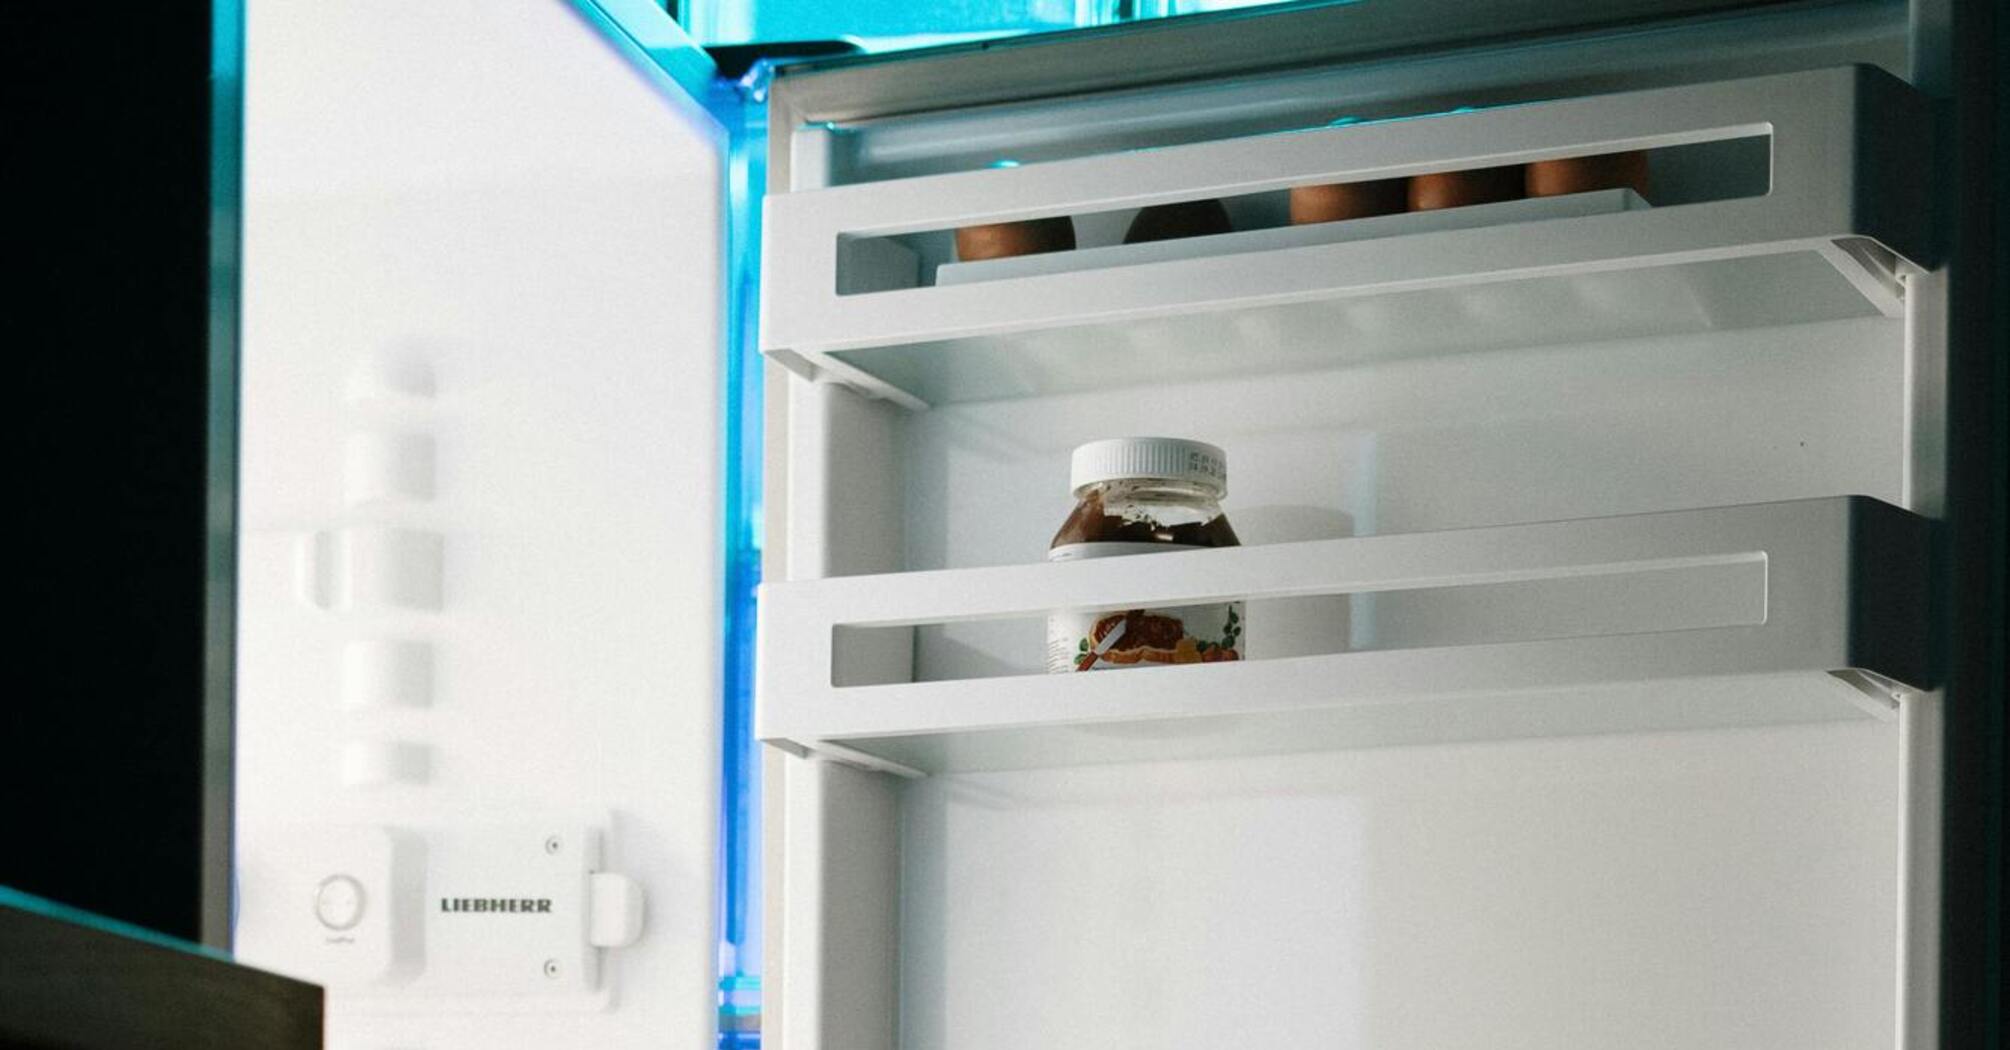 Как избавиться от неприятного запаха из холодильника: 3 действенных способа